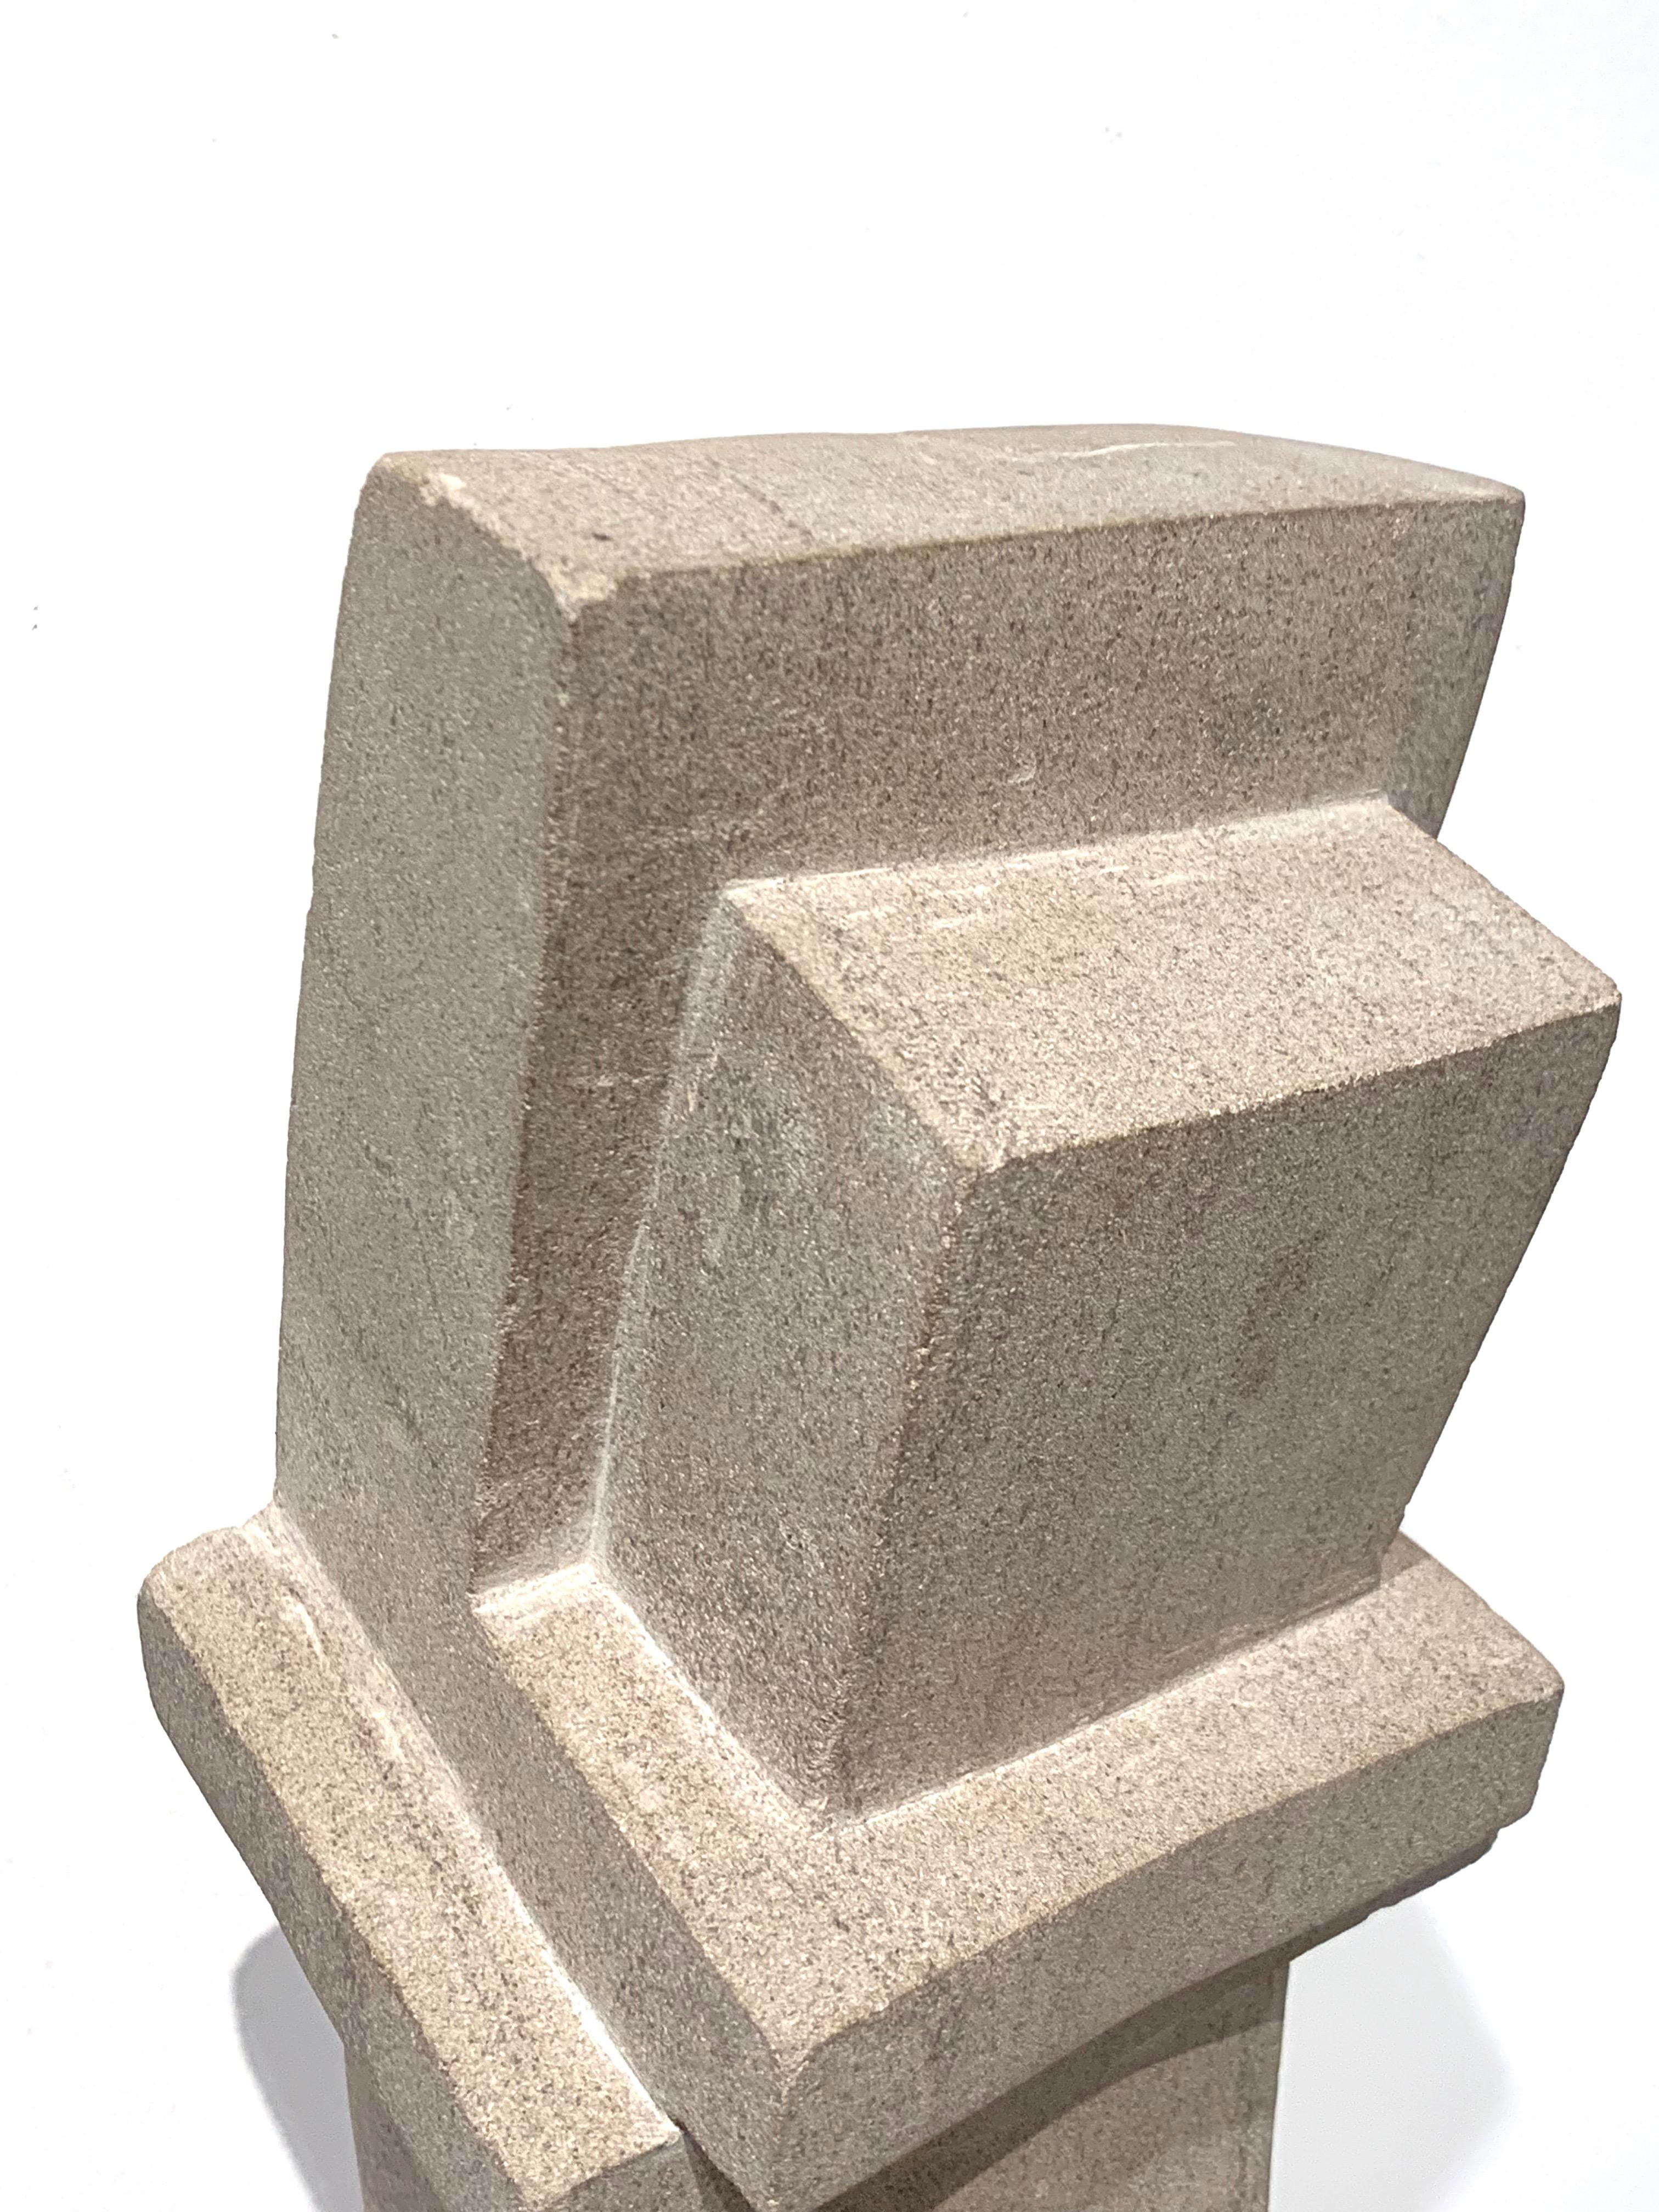 Cast Concrete Sculpture by Bakst 5